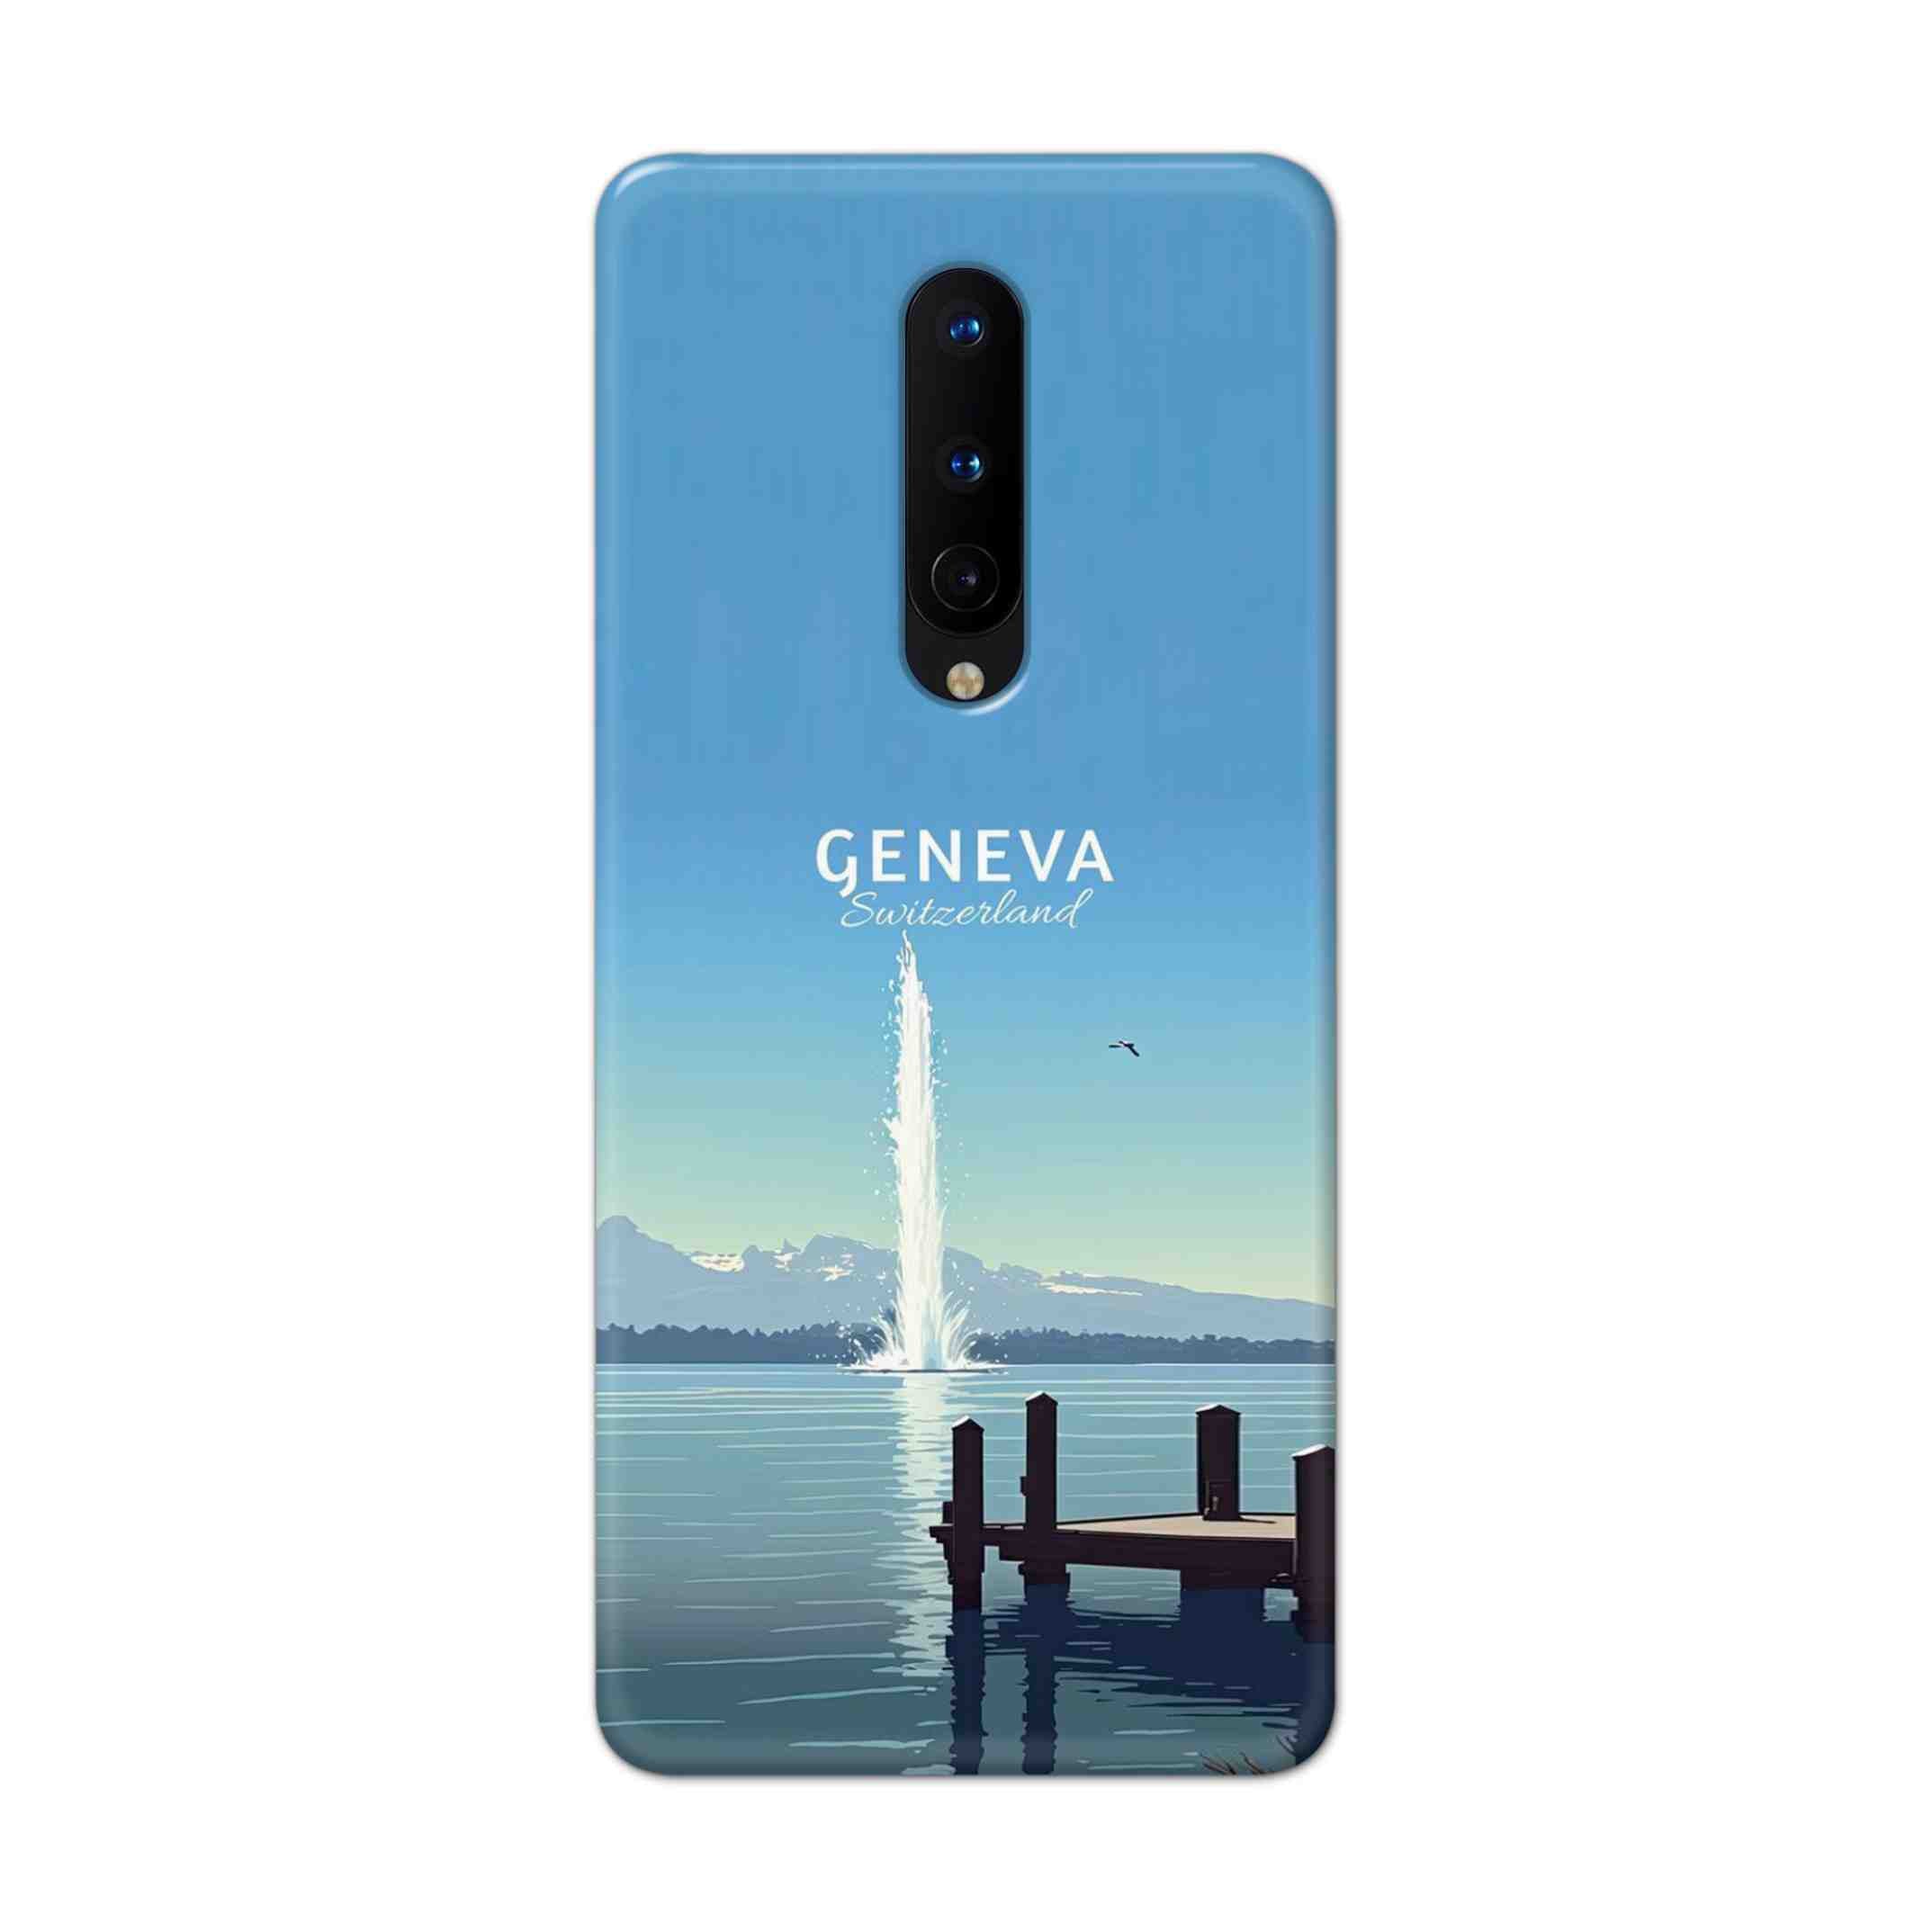 Buy Geneva Hard Back Mobile Phone Case Cover For OnePlus 8 Online